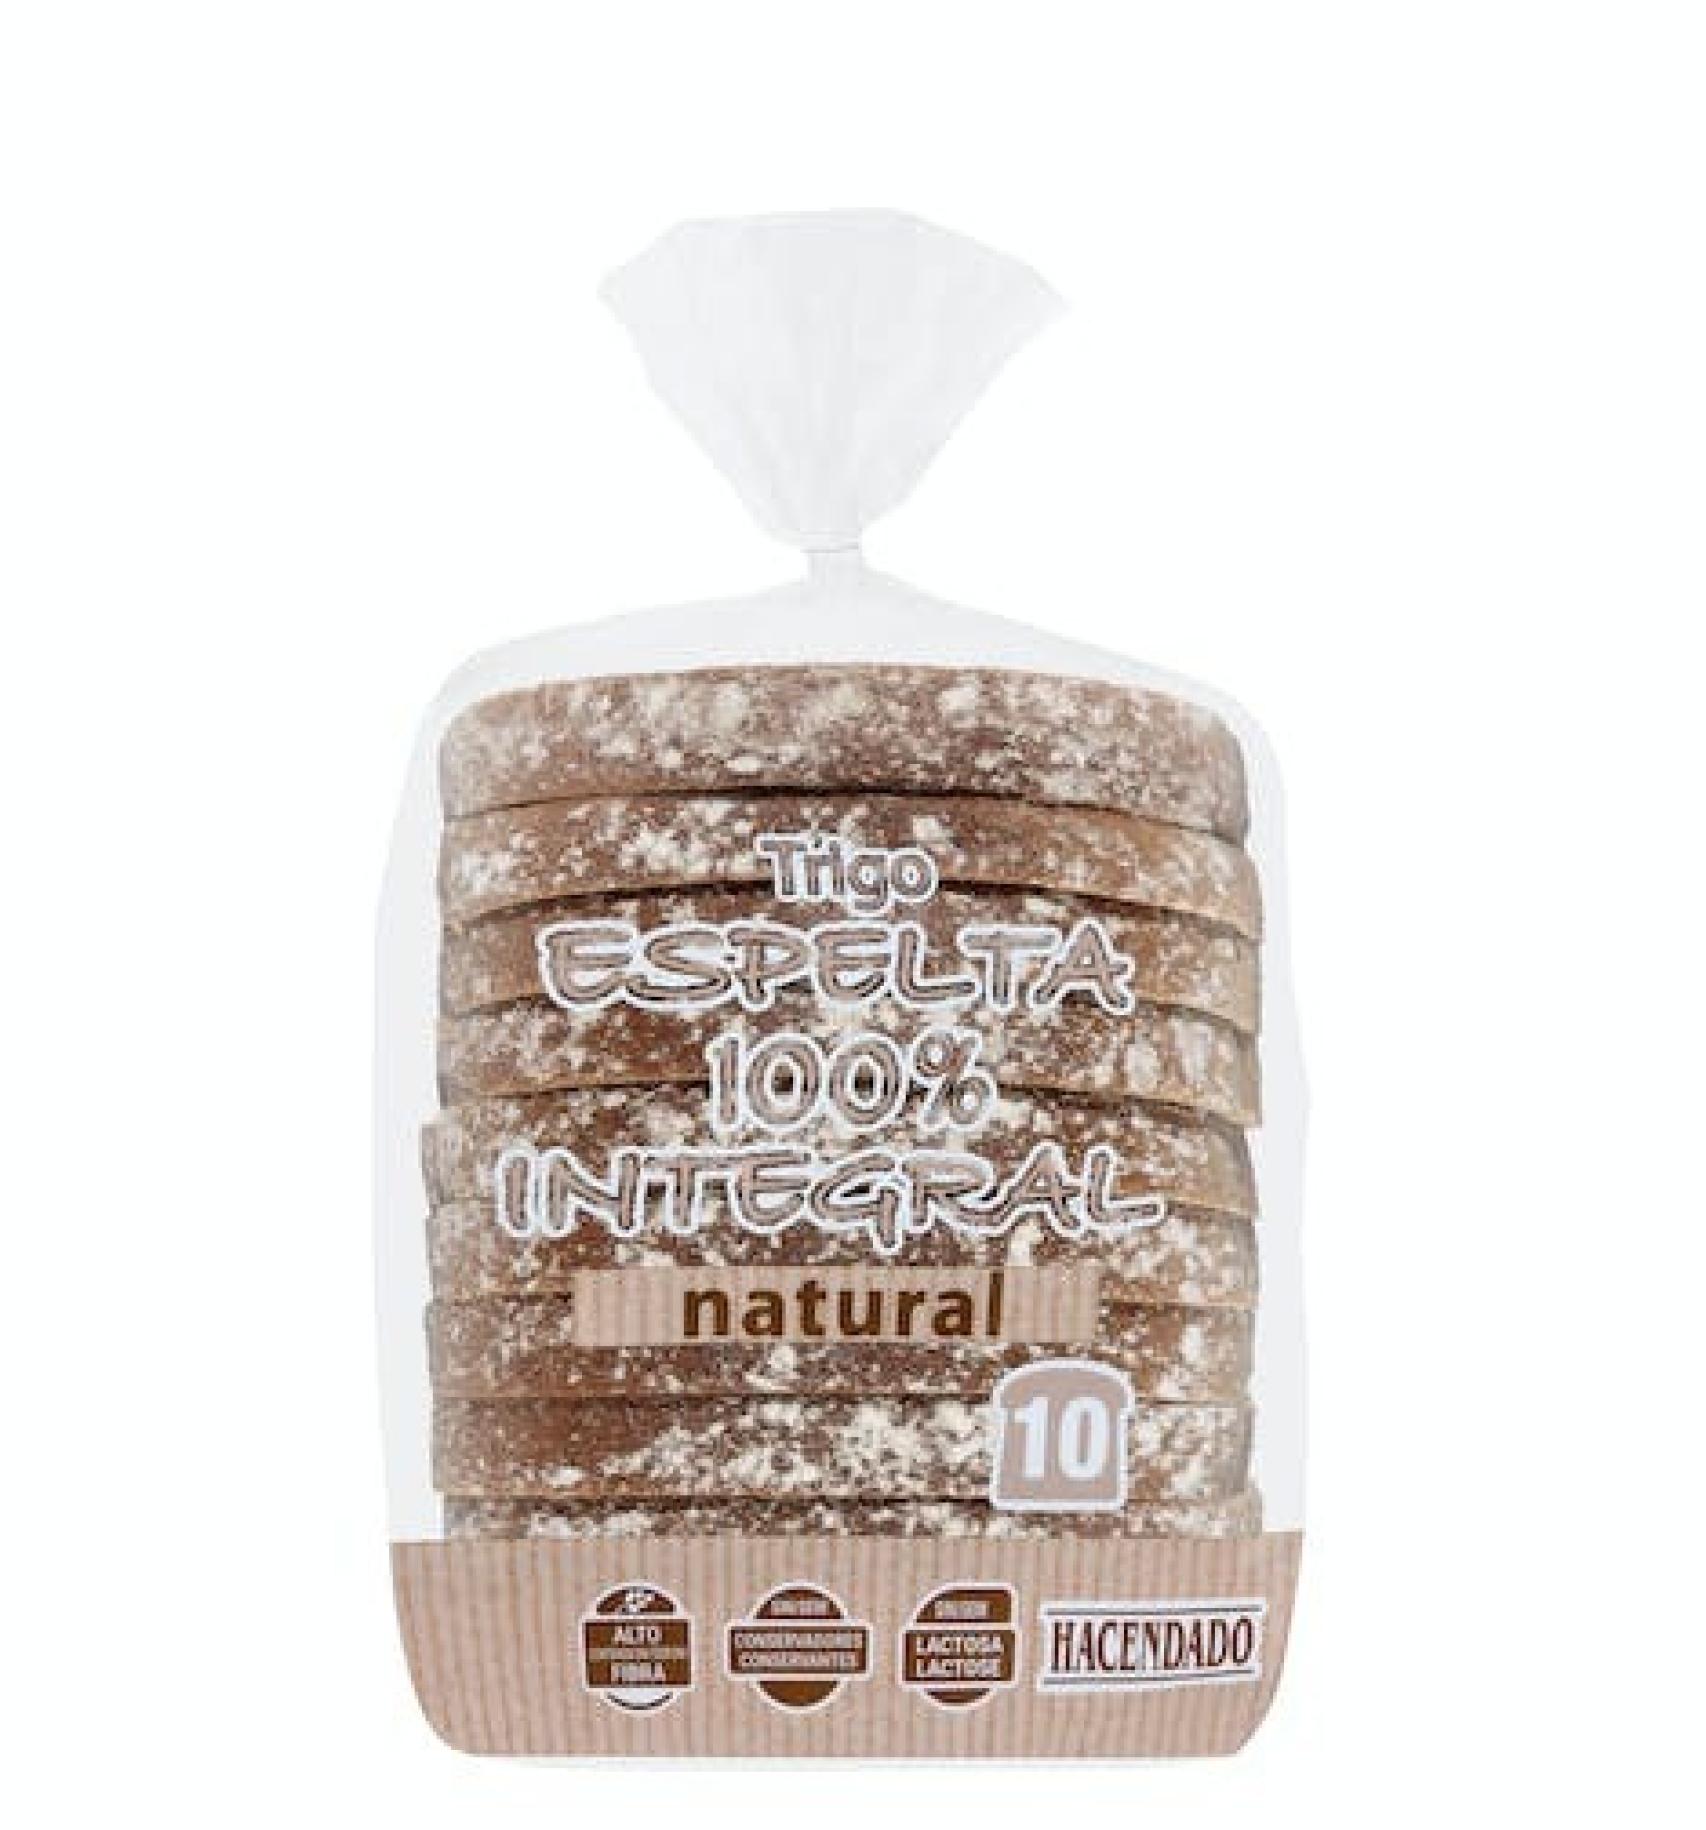 Éste es el mejor pan de molde que puedes comprar en el supermercado